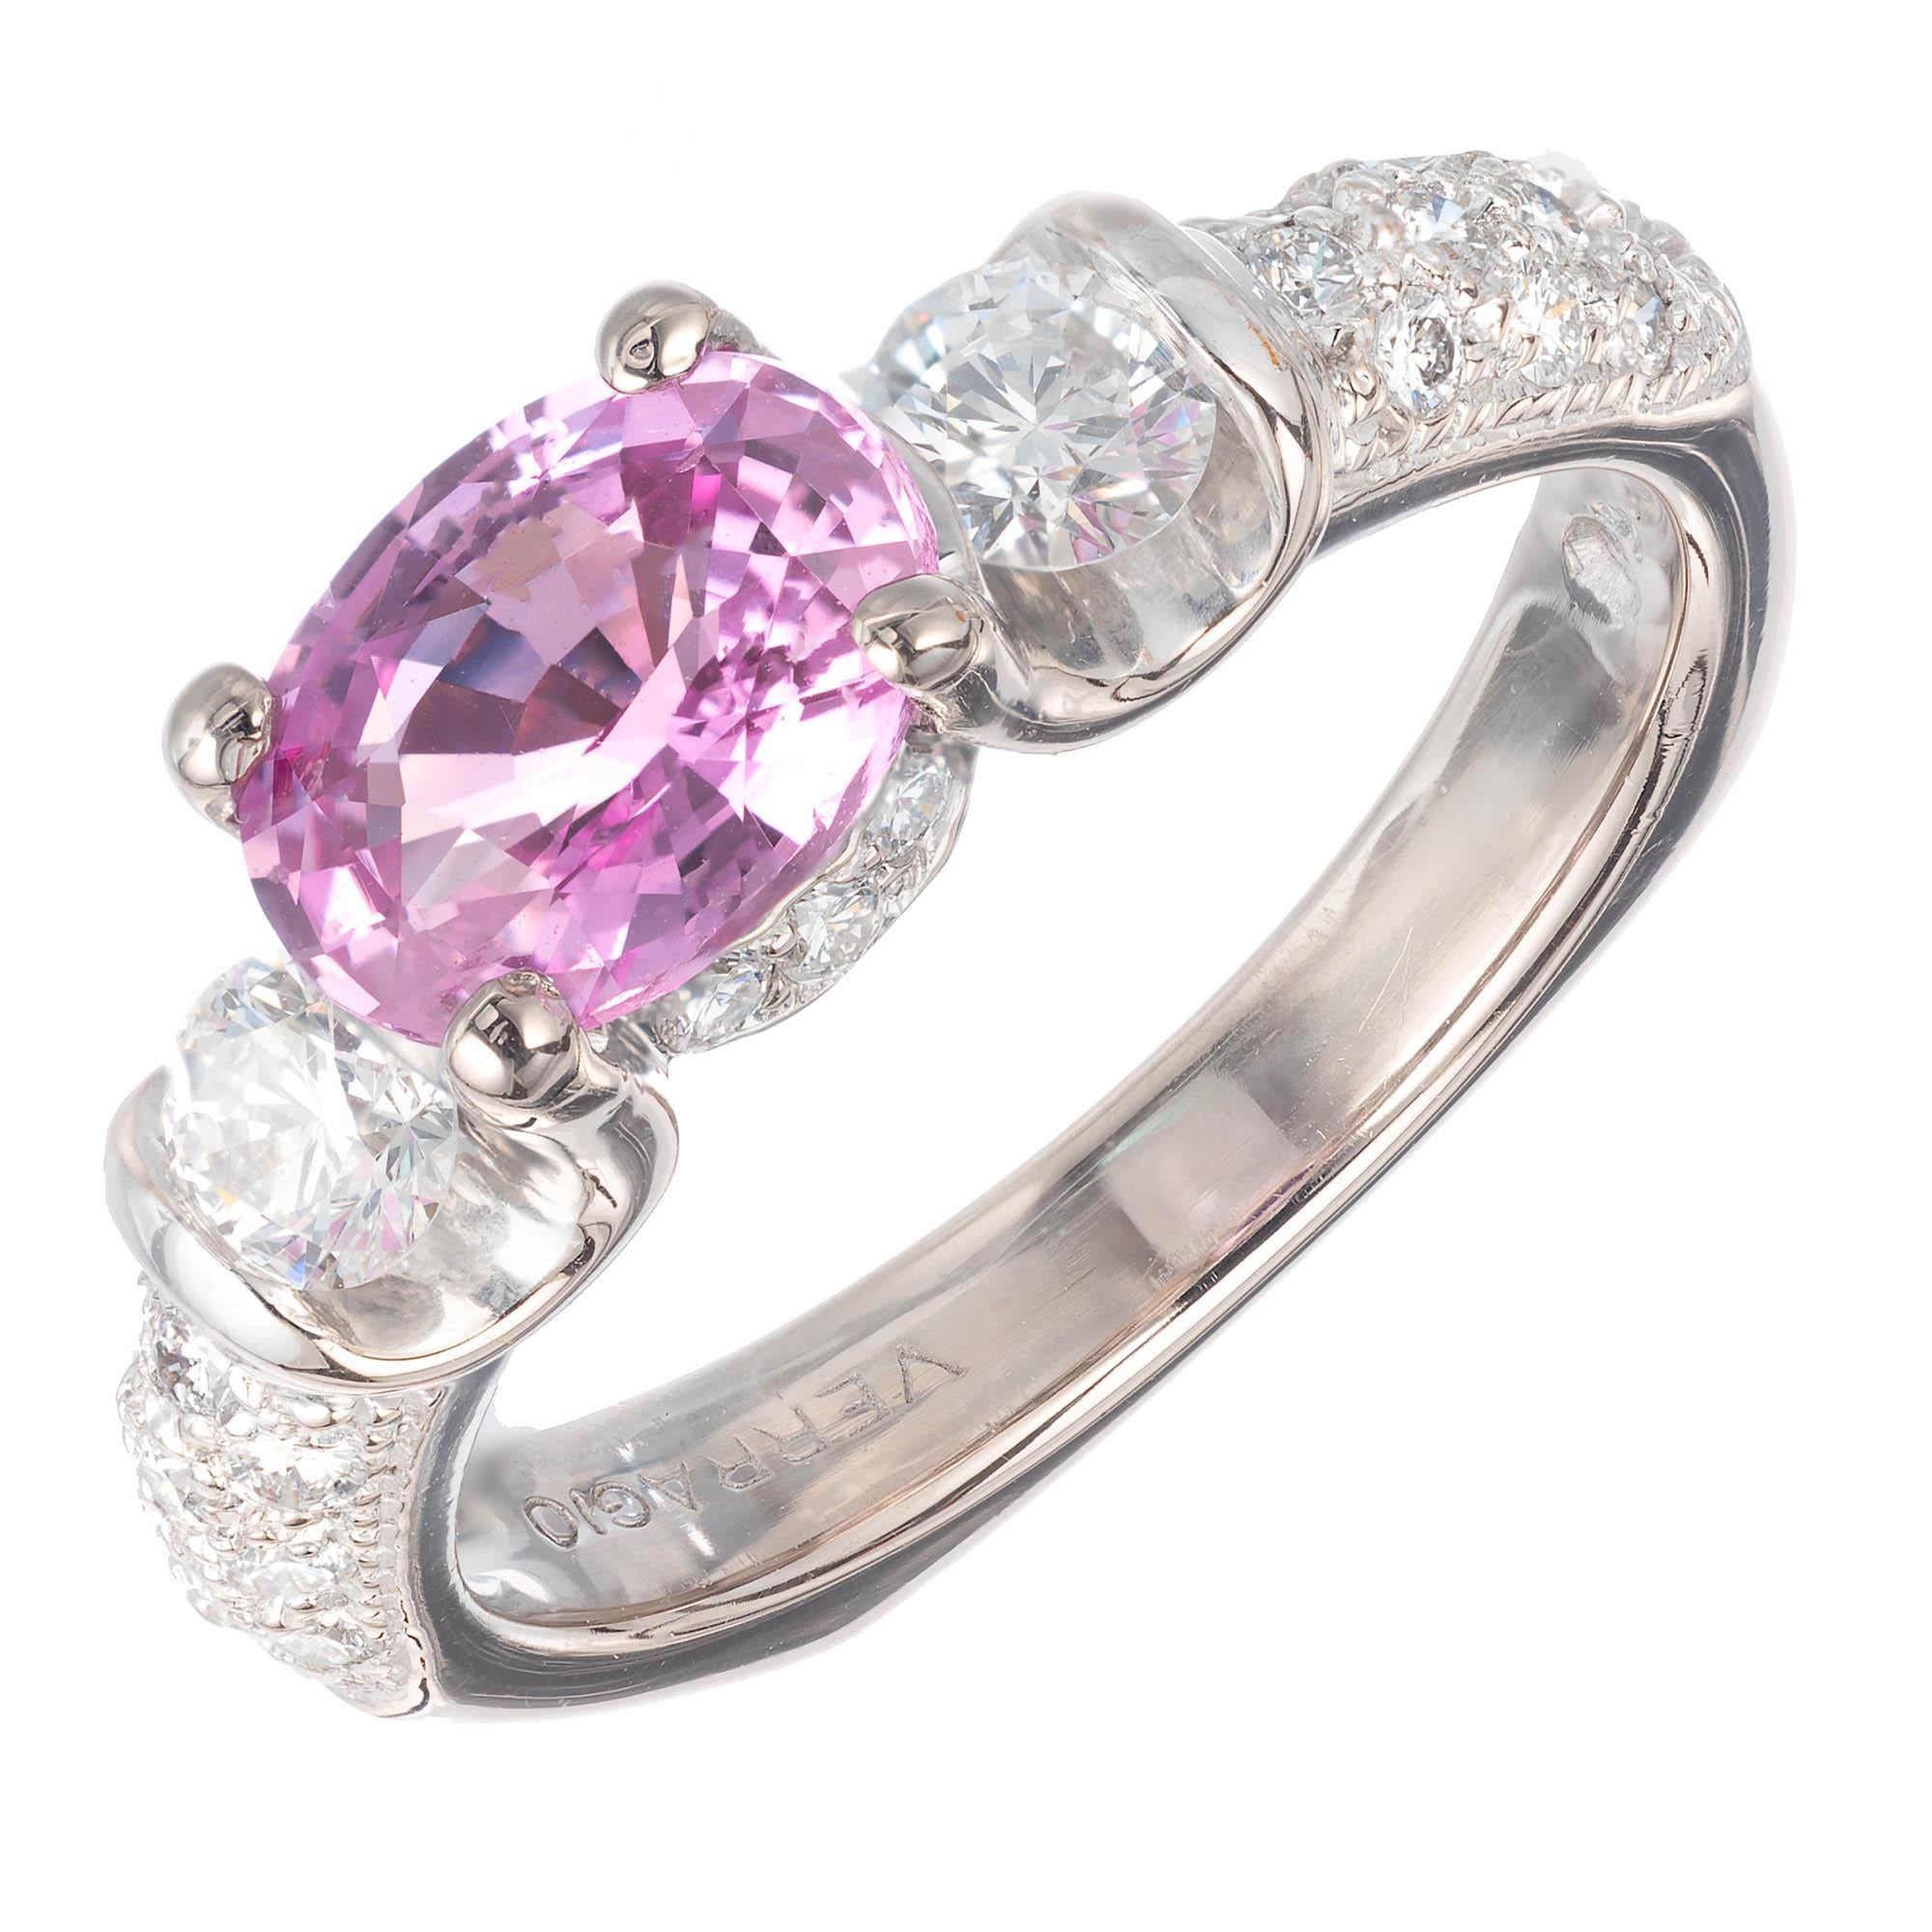 Verragio Verlobungsring mit GIA-zertifiziertem 1,60 Karat rosa Saphir und Diamant in Gold